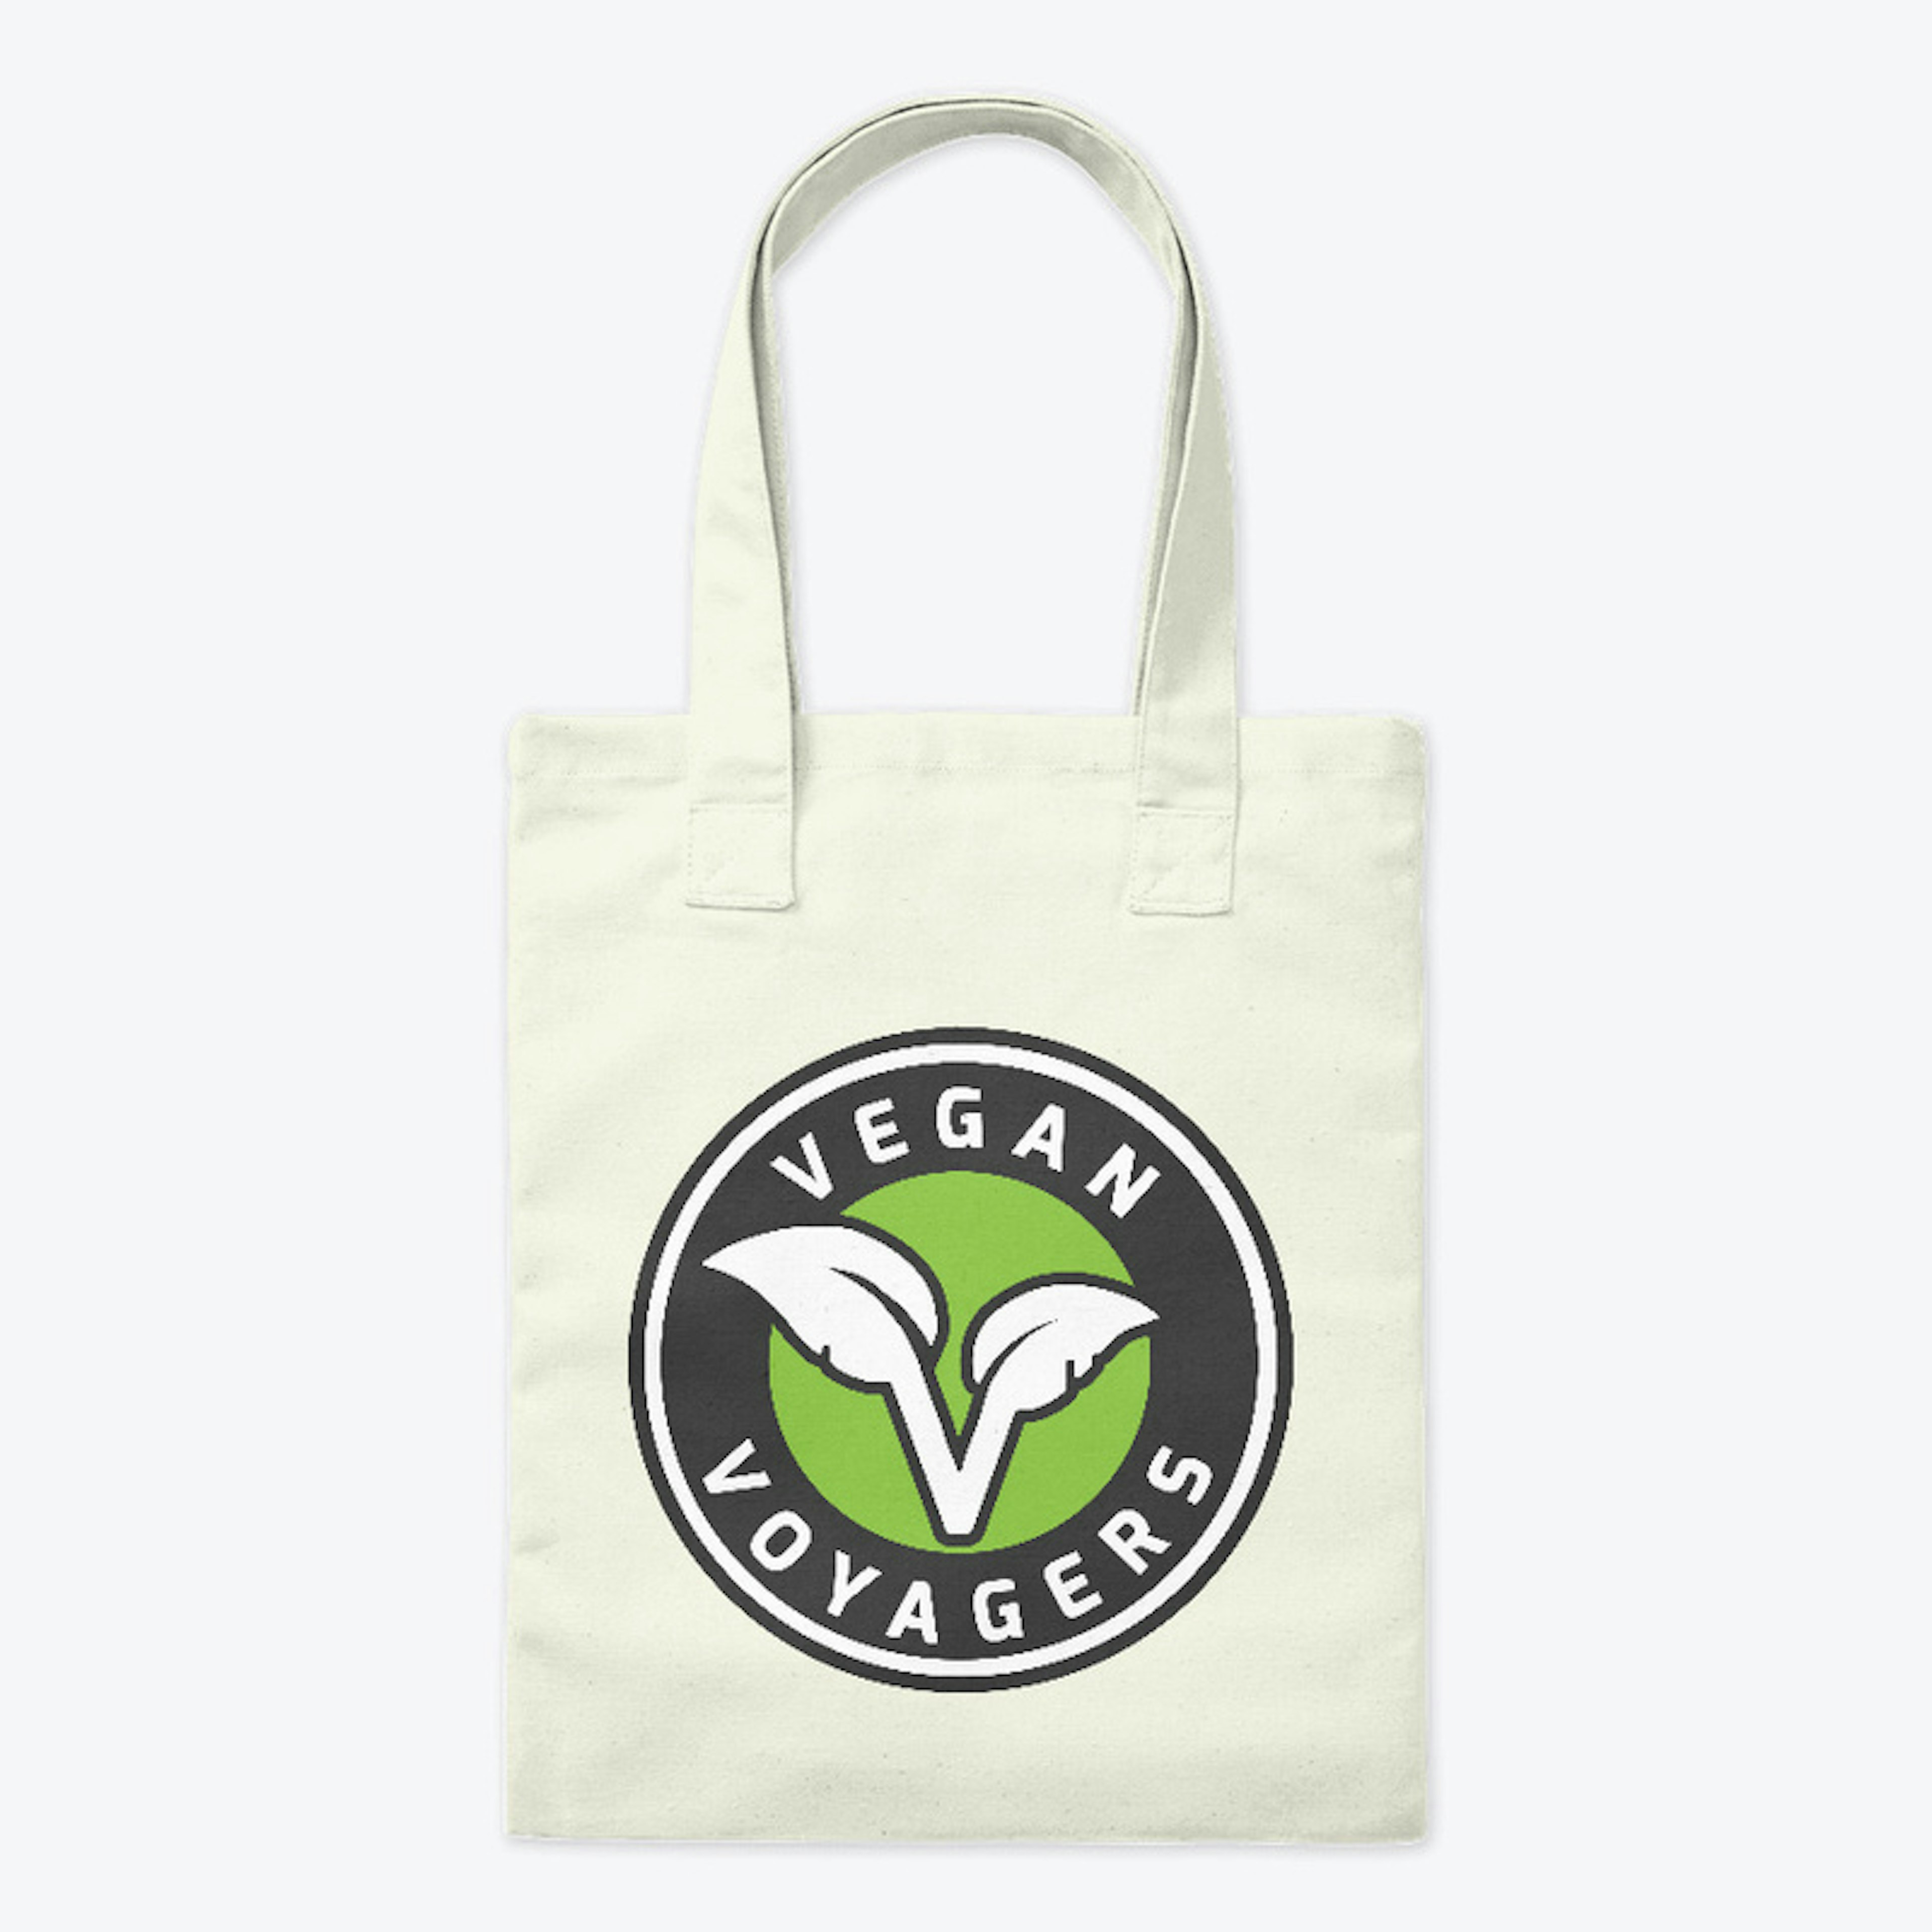 Vegan Voyagers Tote Bag